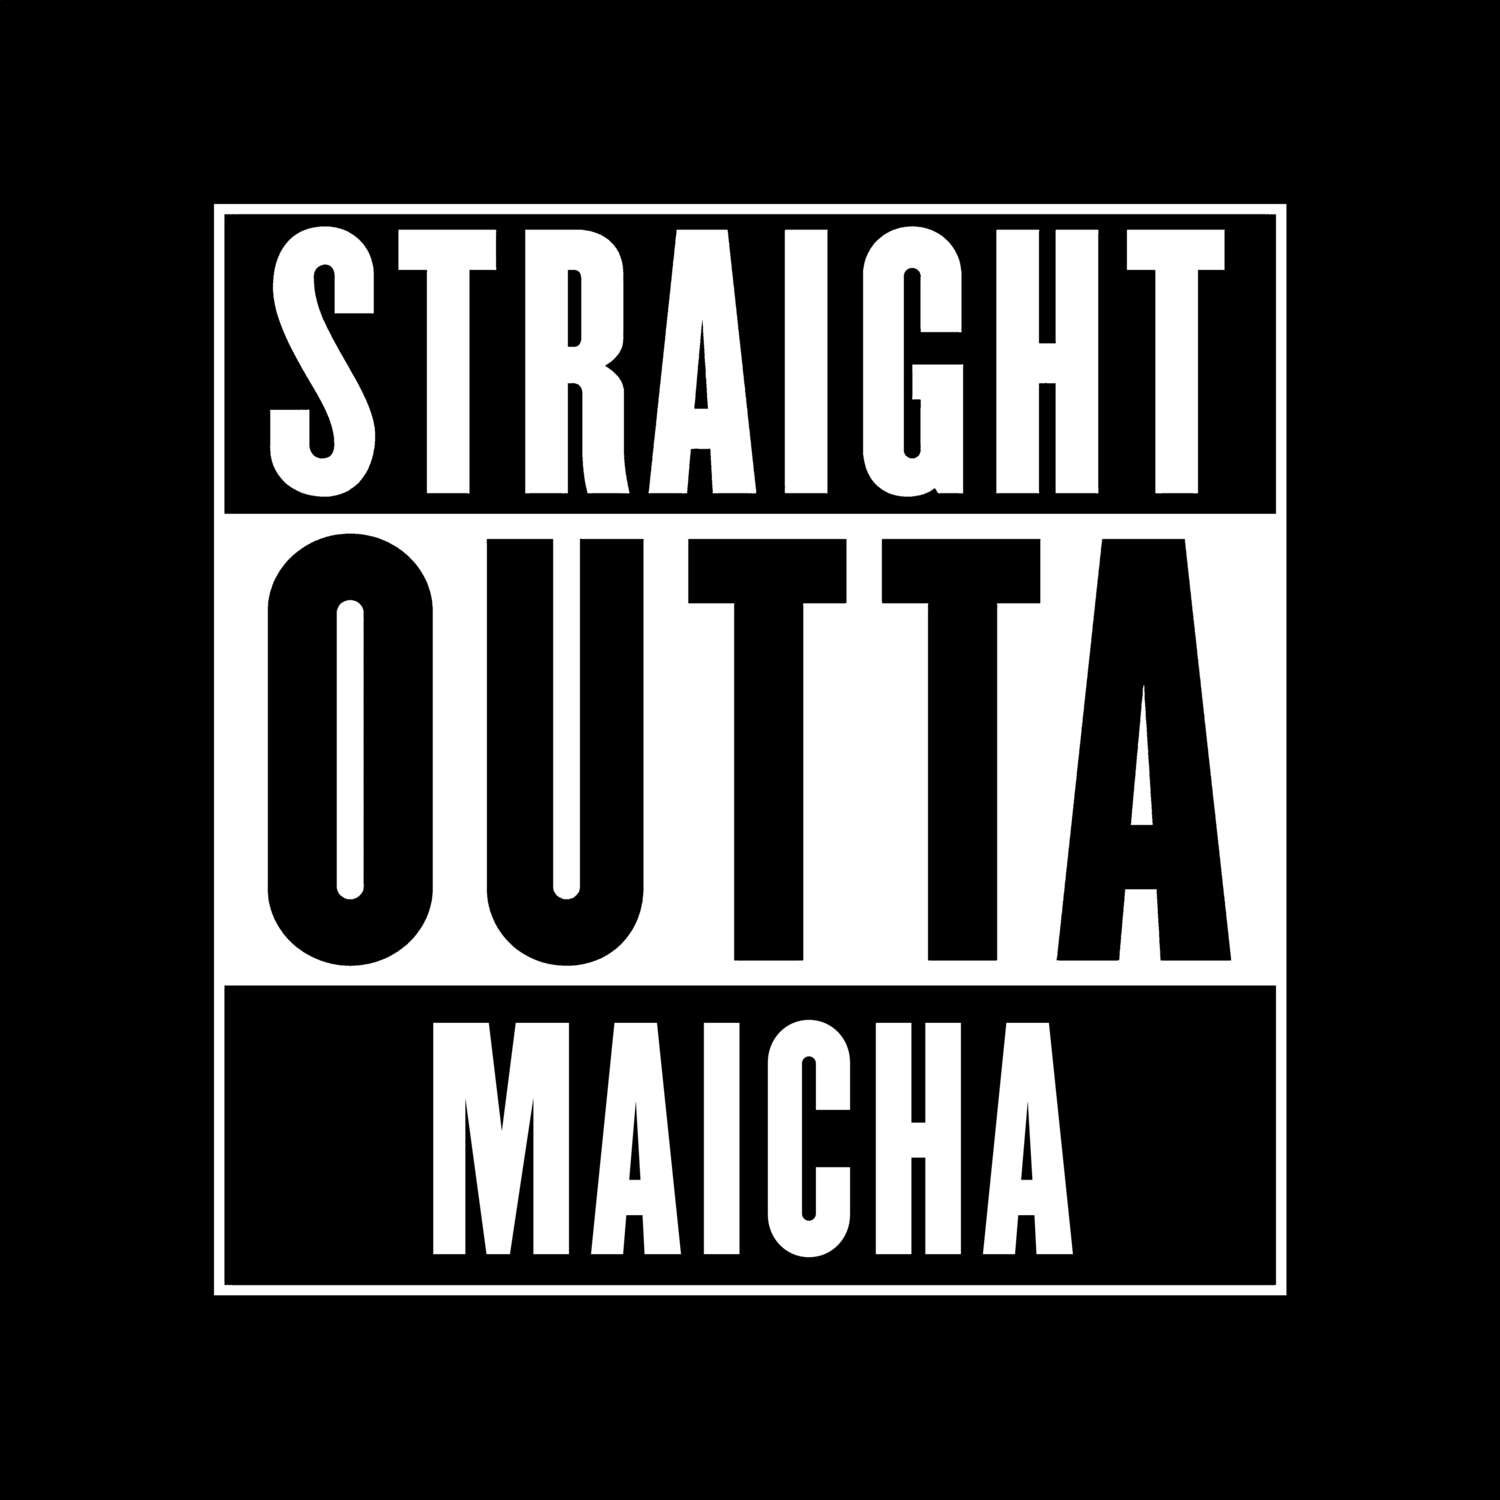 Maicha T-Shirt »Straight Outta«